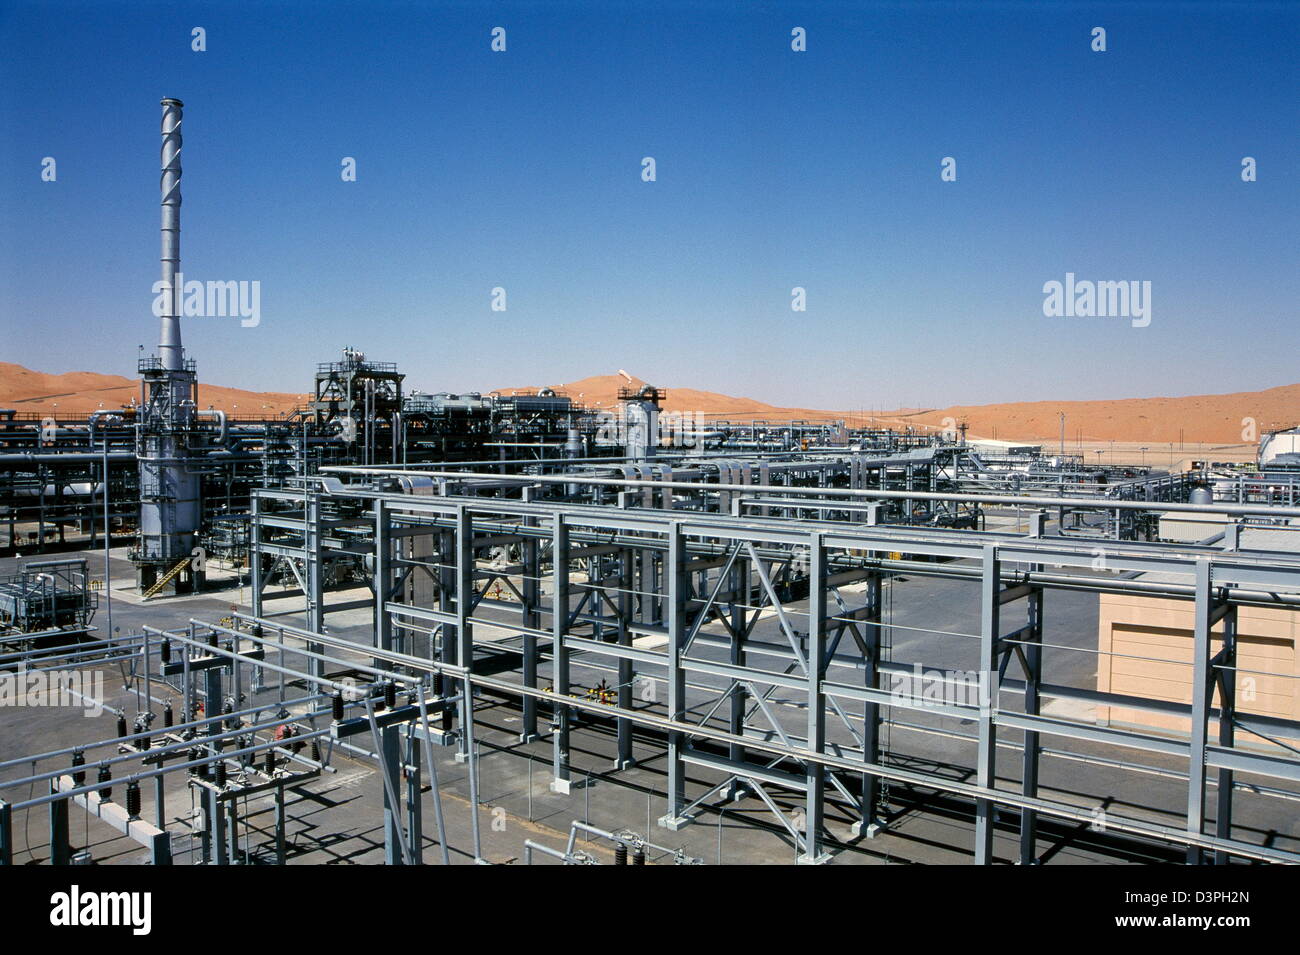 Ein Panorama der shaybah Gas öl Luftzerlegungsanlage (gosp), eine große Gas-, Öl- und Produktionsstätte in das Leere Viertel entfernt Stockfoto